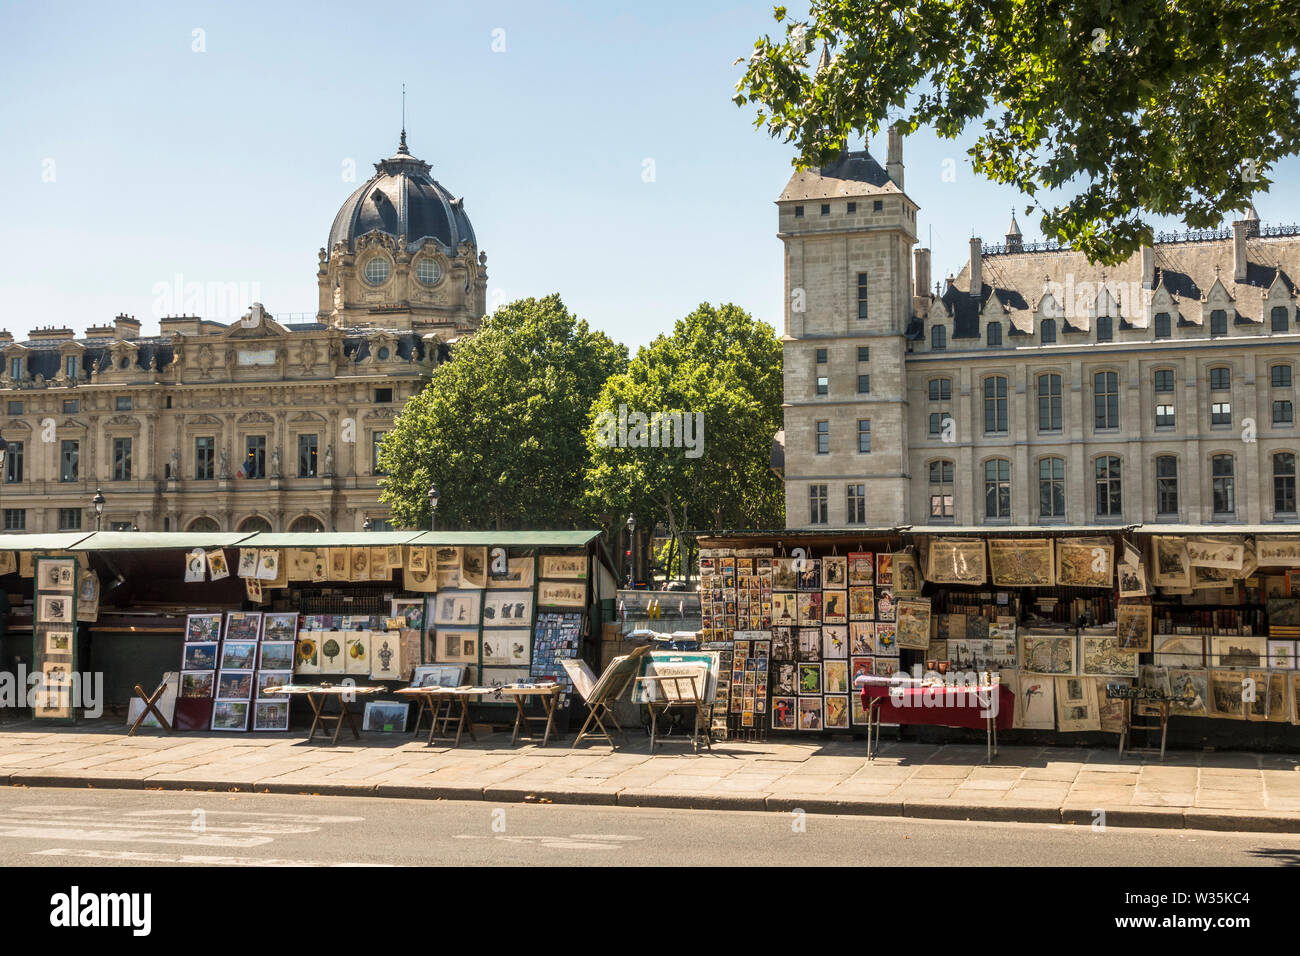 Die Bouquinistes von Paris, Frankreich, Buchhändler Stände neben Ti seine Fluss, Frankreich. Stockfoto